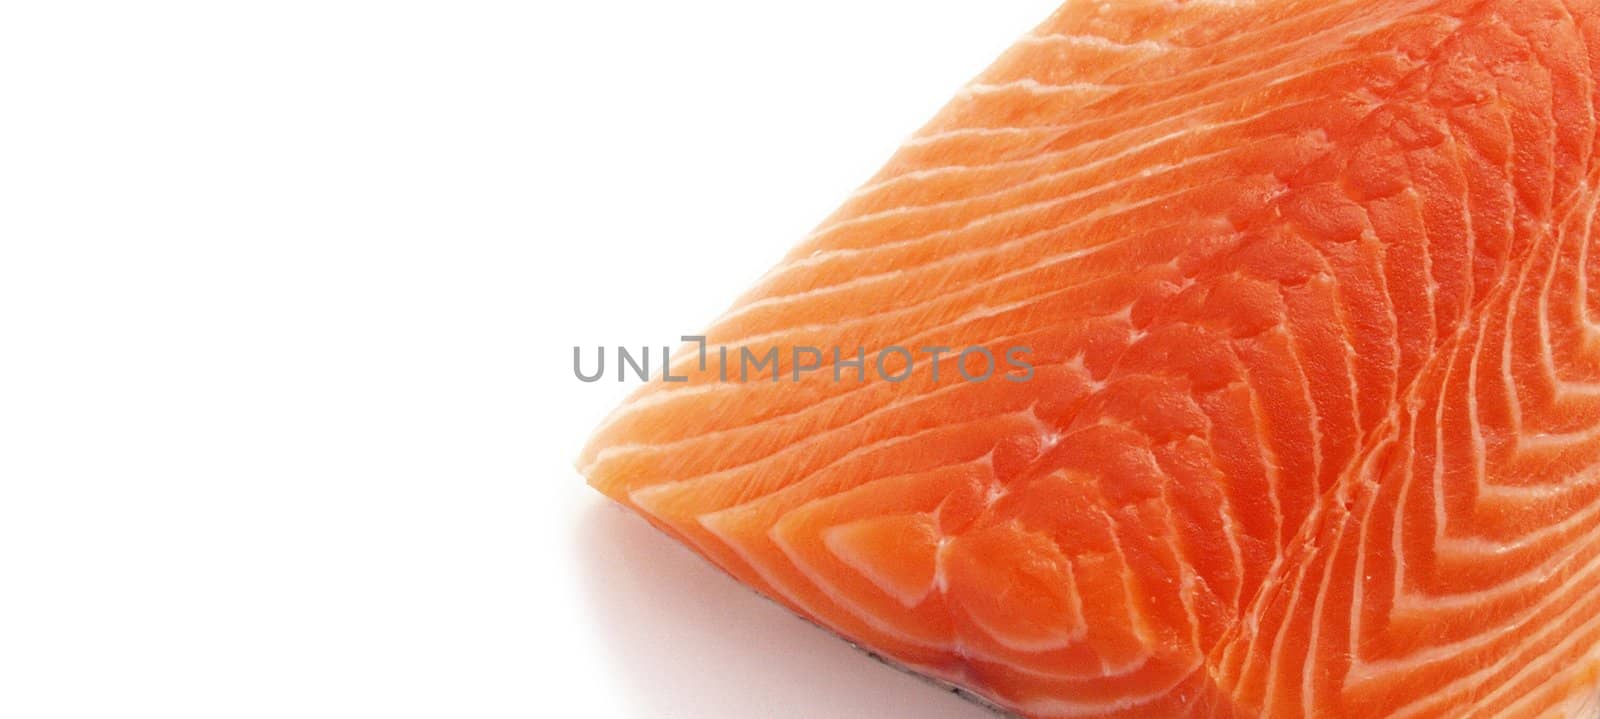 uncooked fresh salmon fish